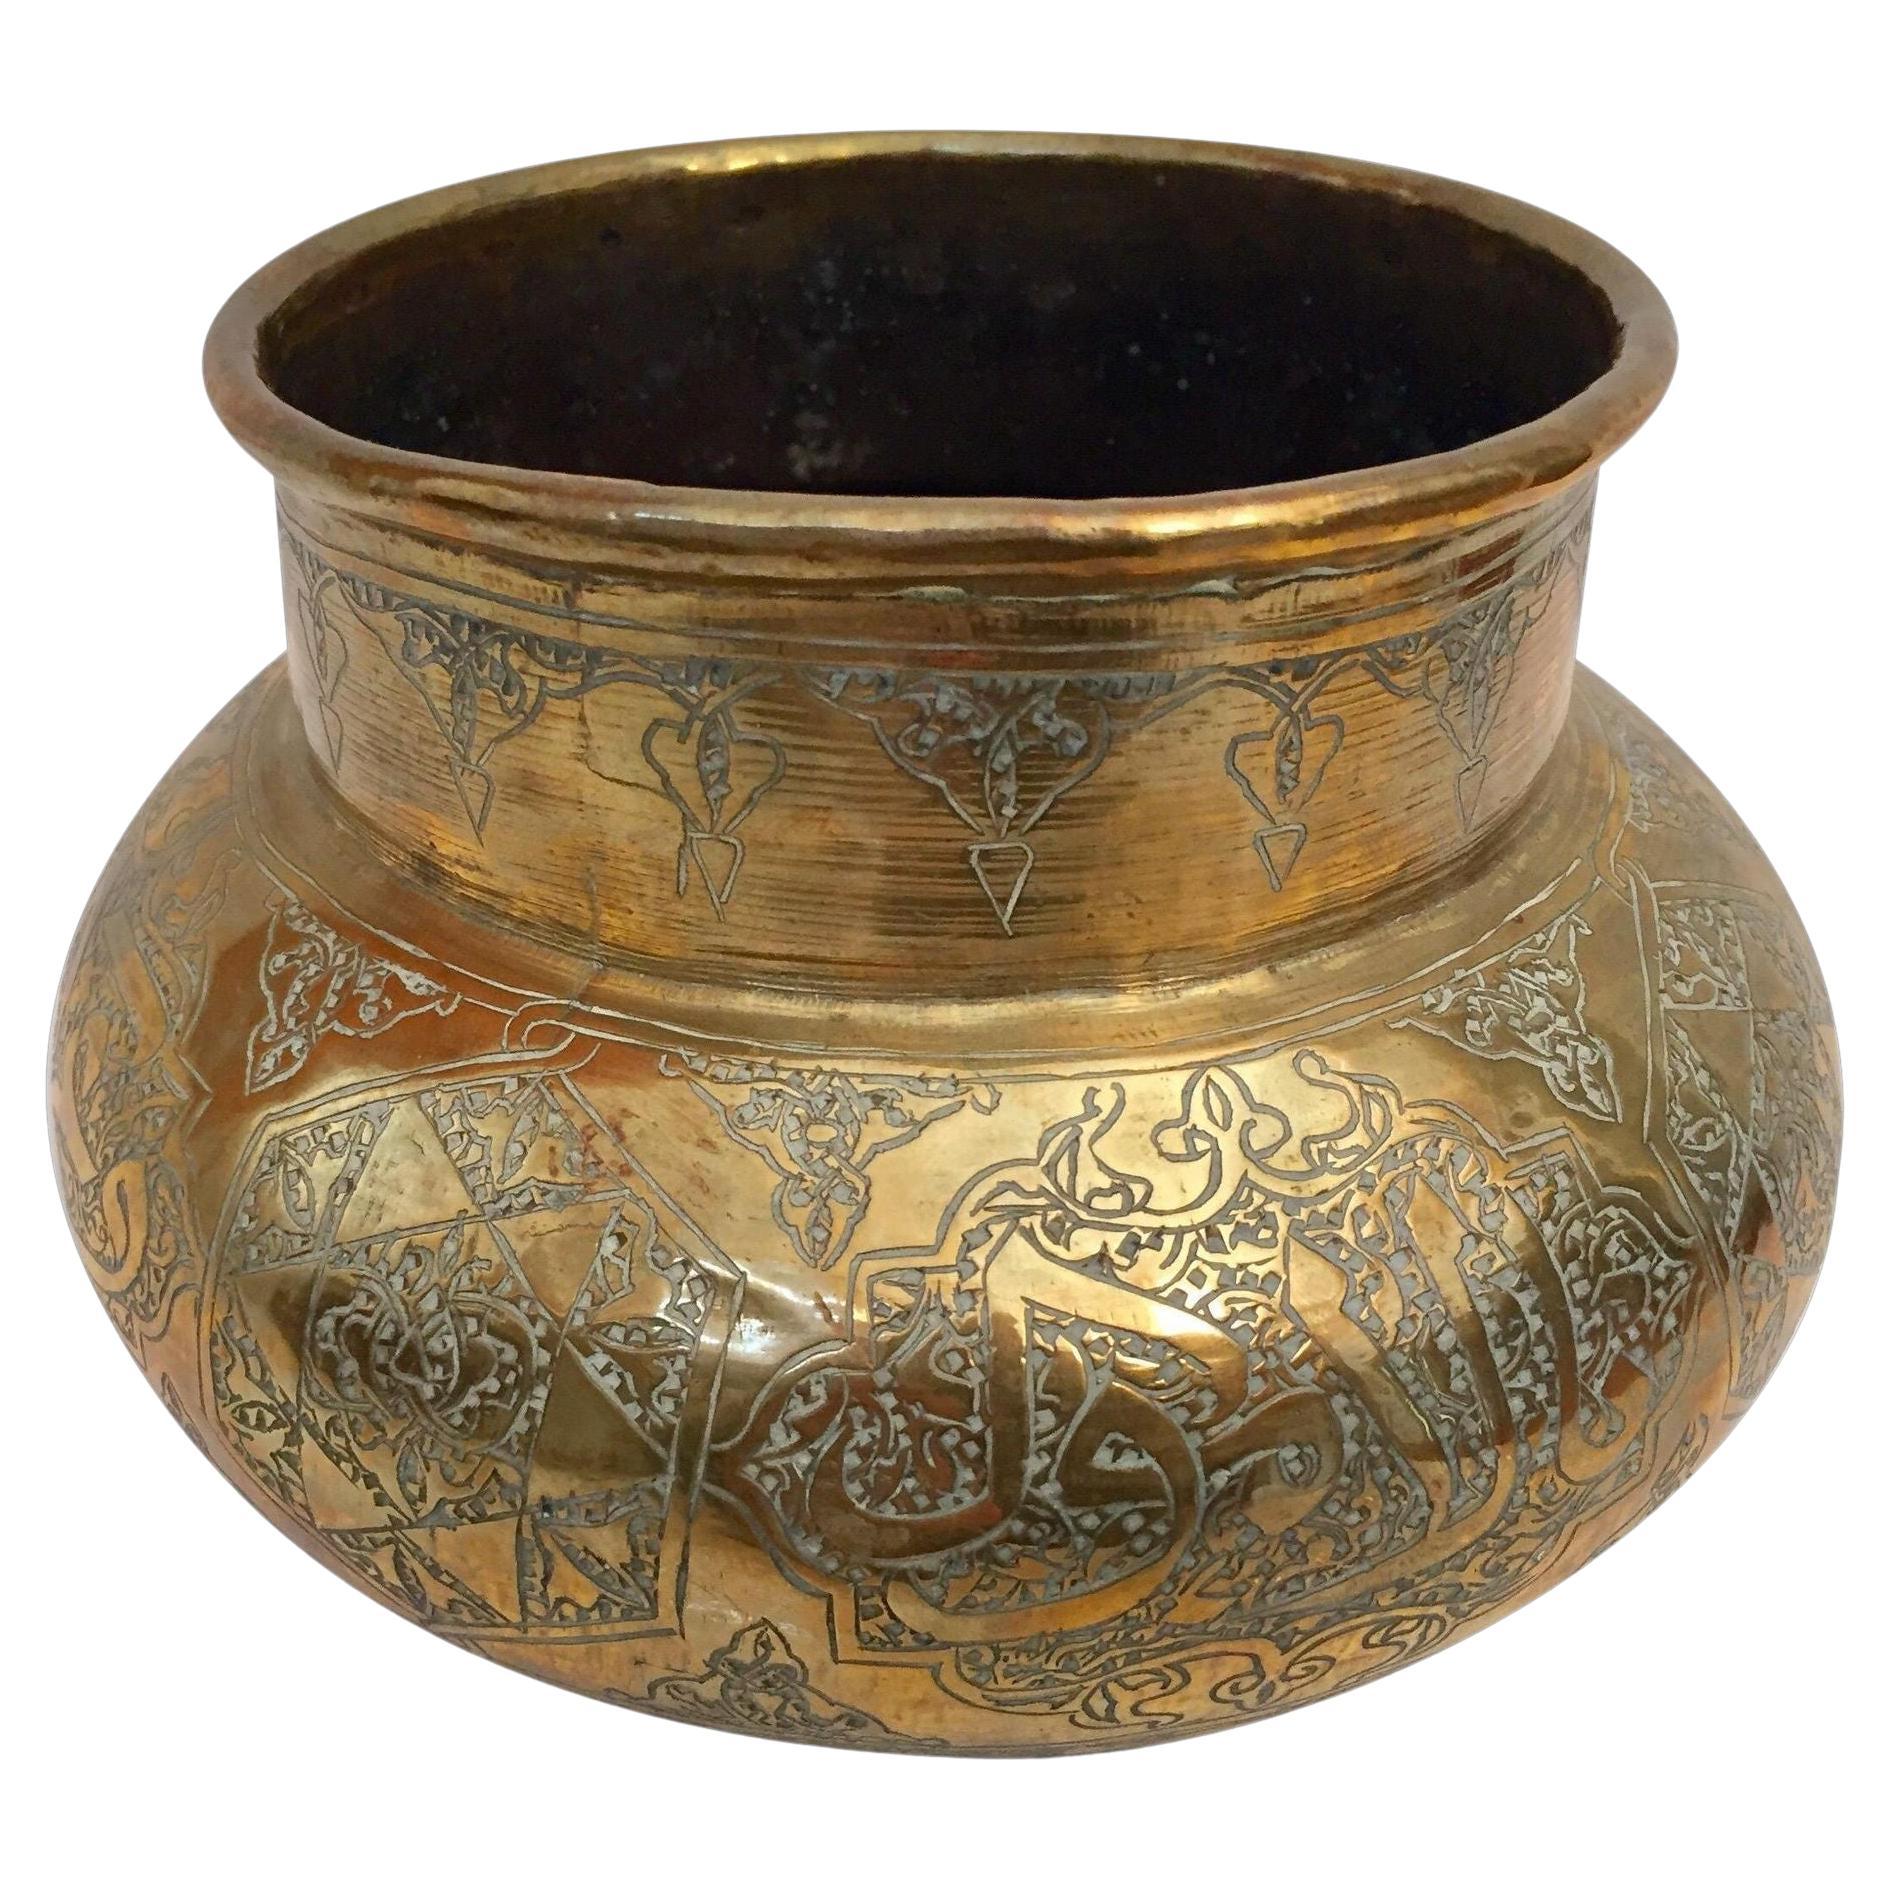 Vase islamique du Moyen-Orient gravé à la main avec écriture de calligraphie